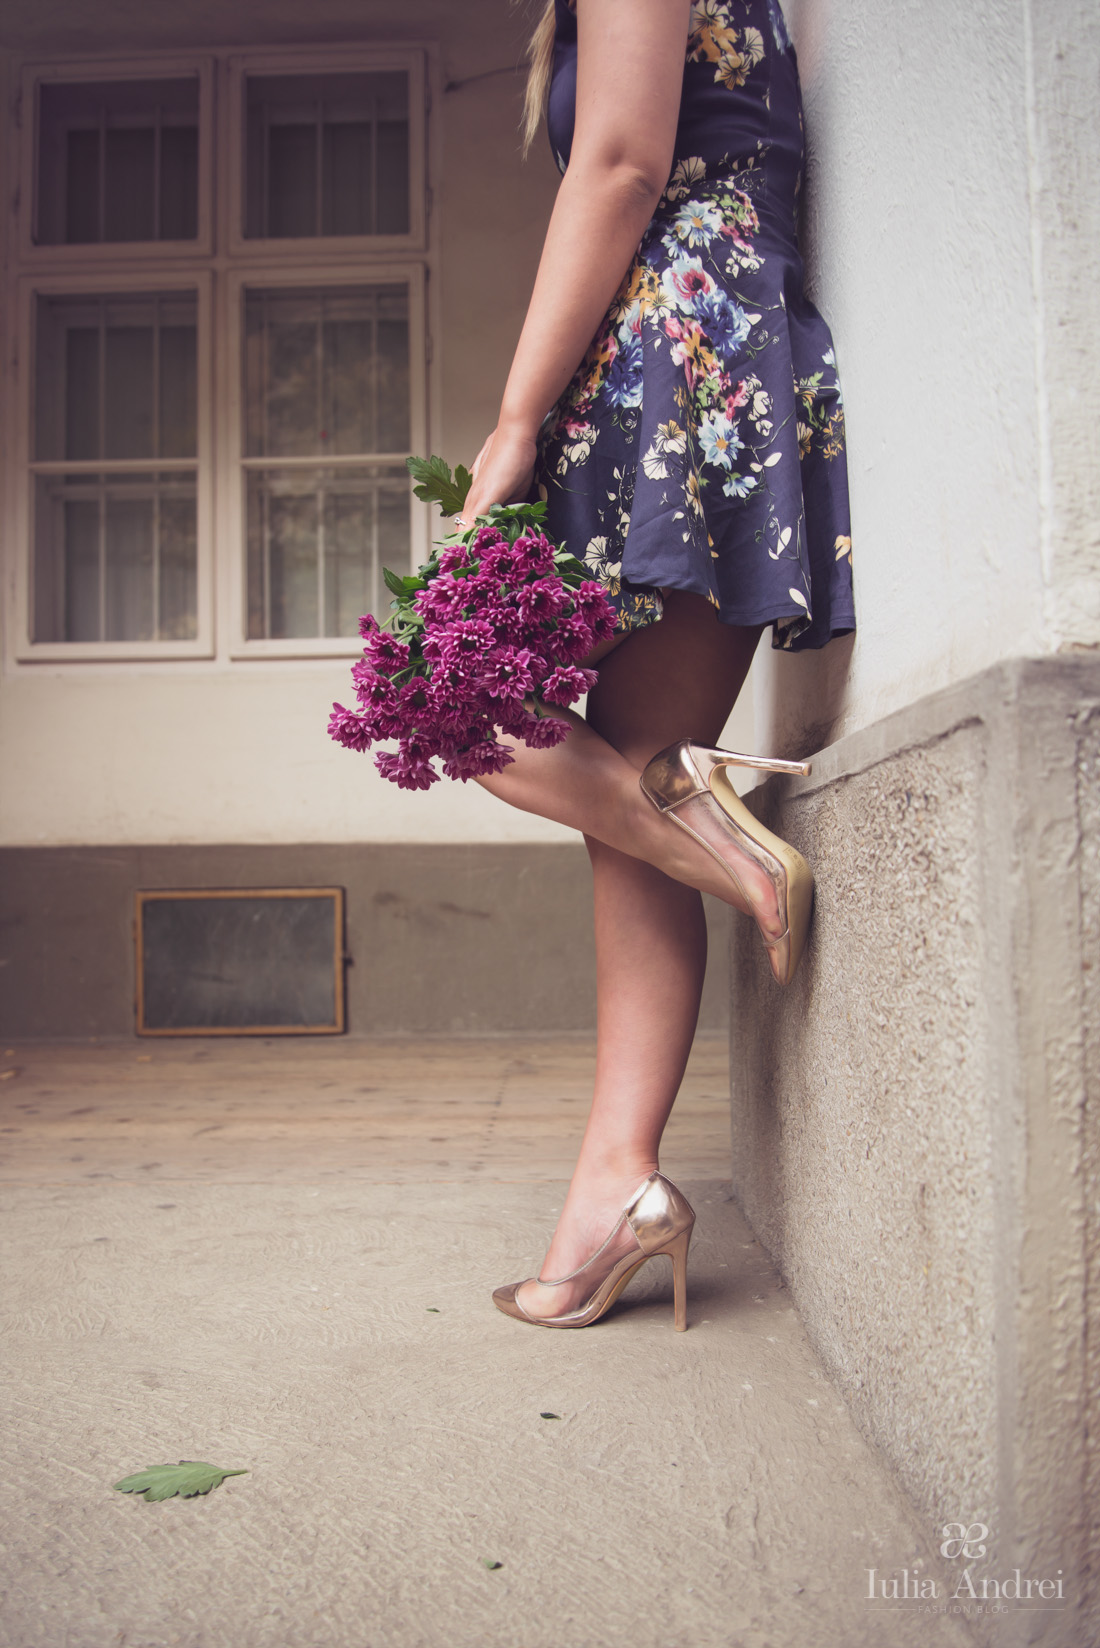 cum purtam imprimeurile florale si stilul feminin rochia albastra cu flori iulia andrei fashion blog